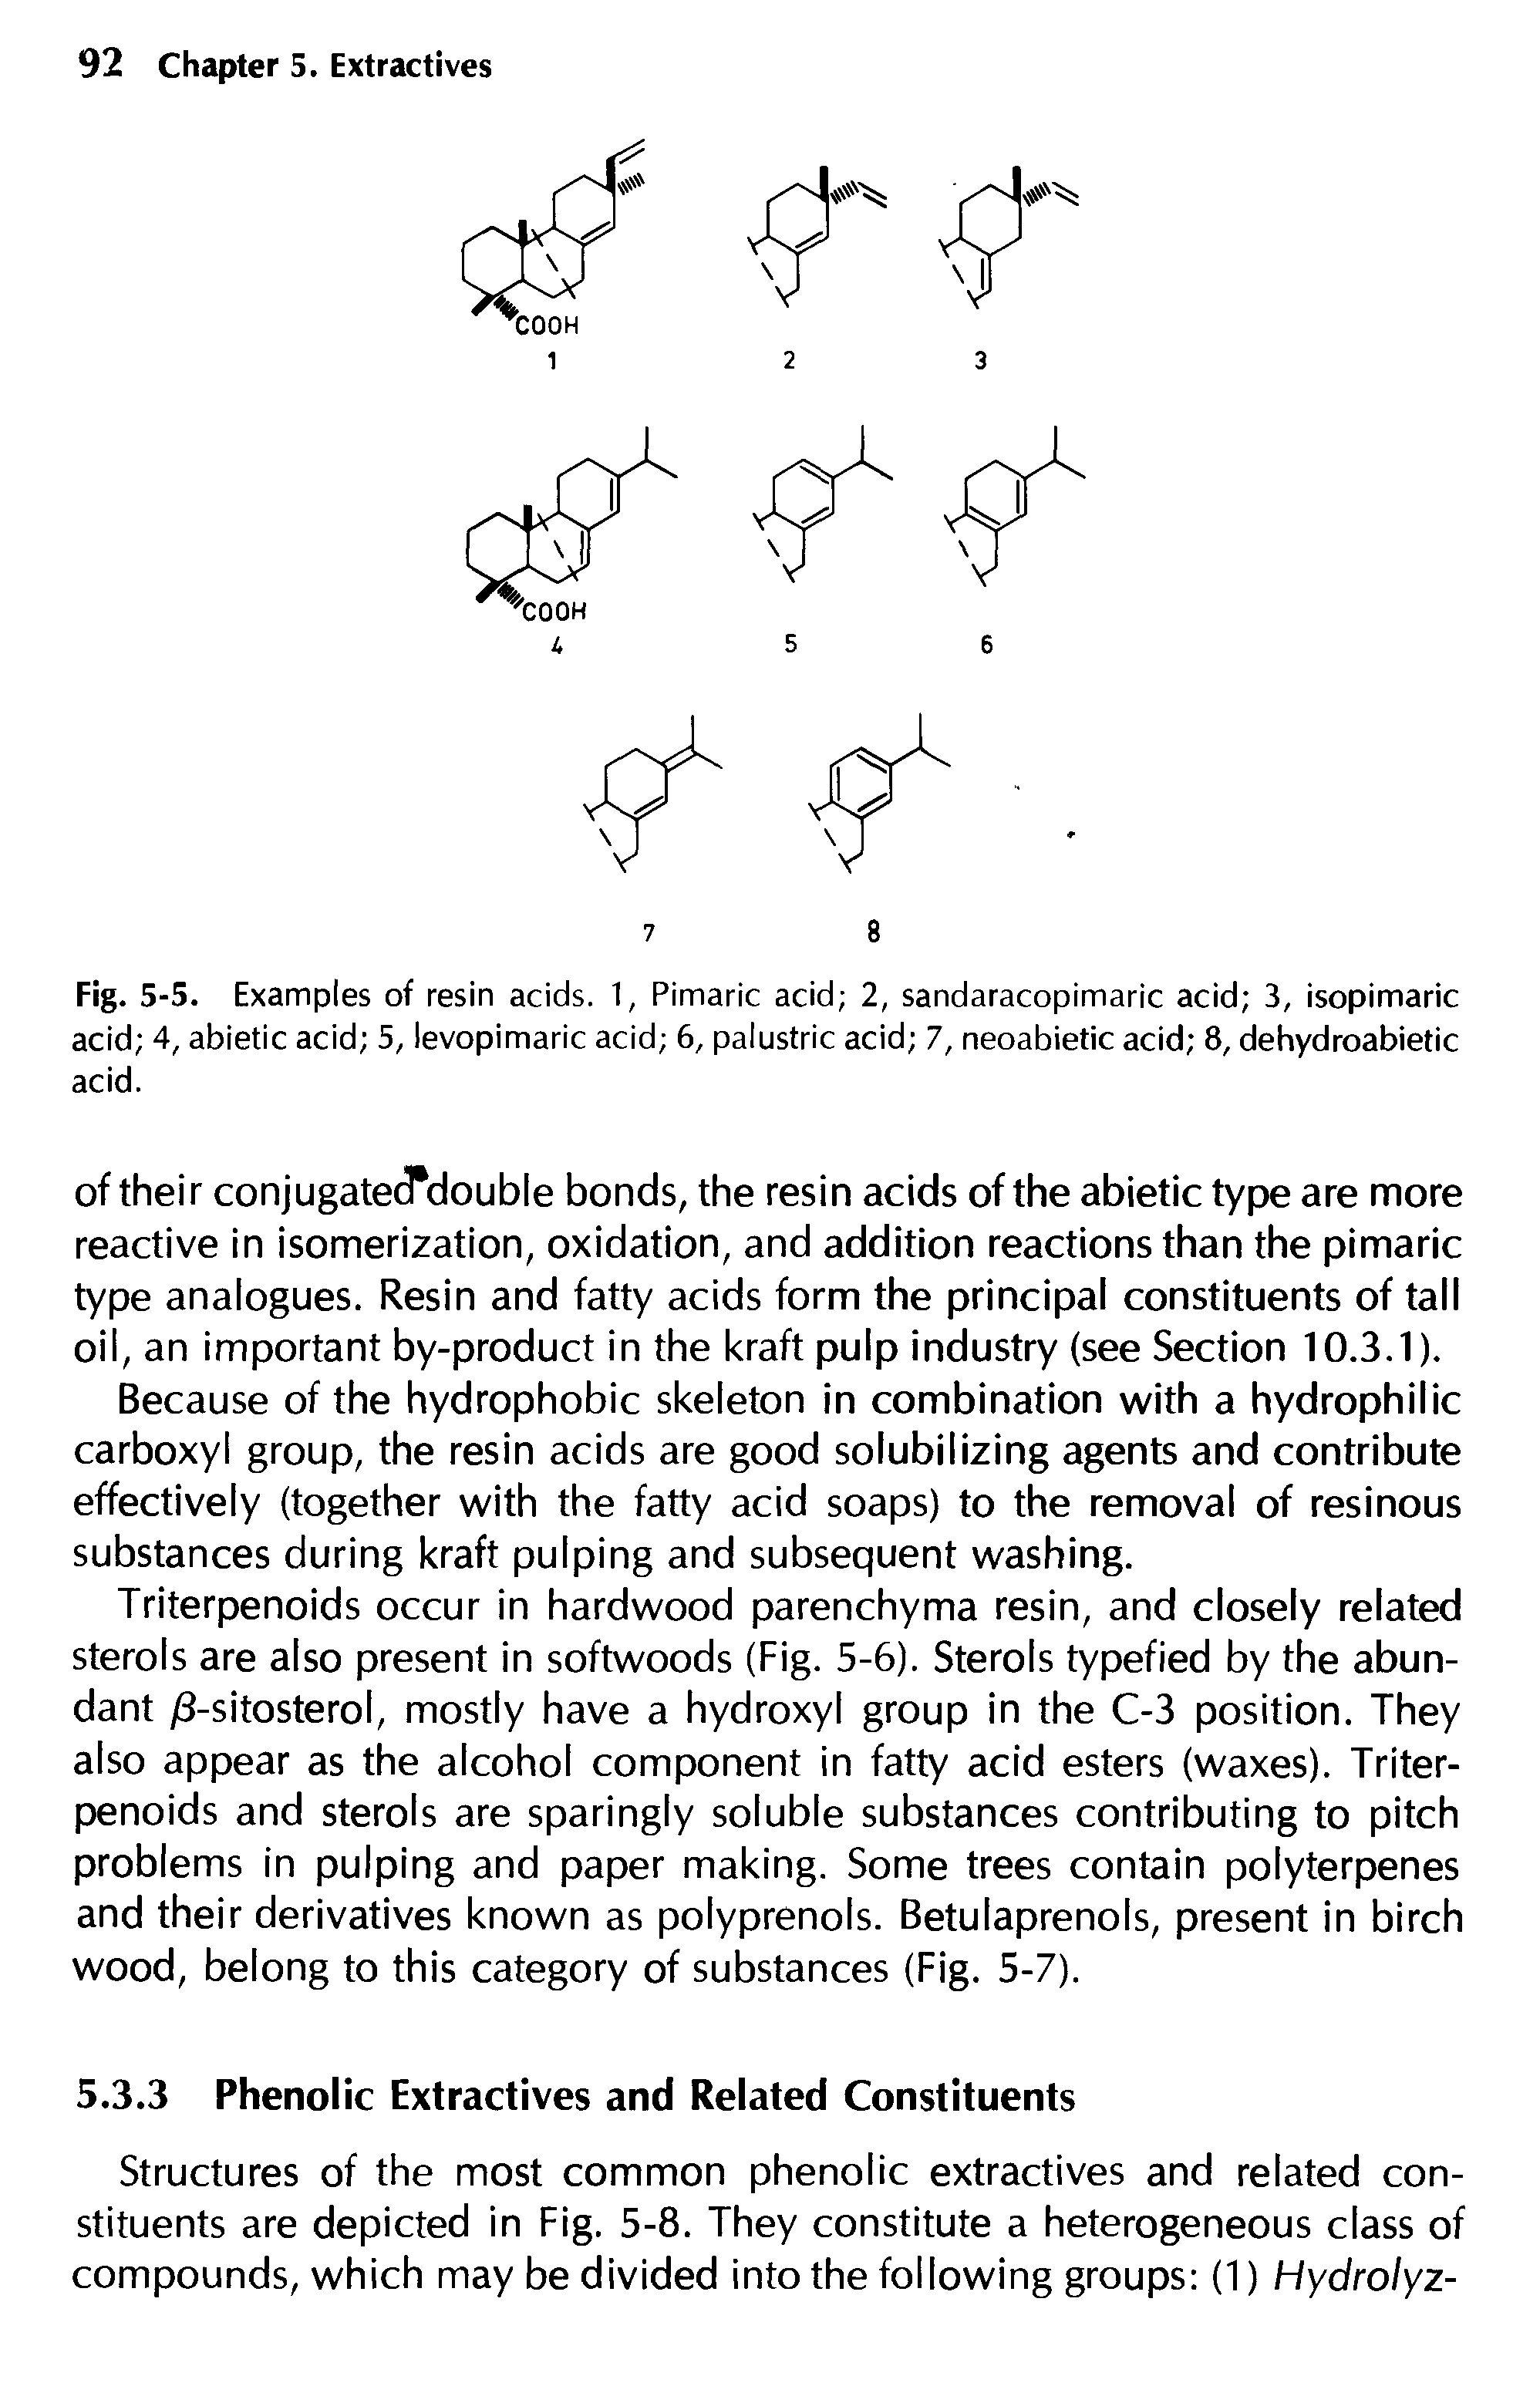 Fig. 5-5. Examples of resin acids. 1, Pimaric acid 2, sandaracopimaric acid 3, isopimaric acid 4, abietic acid 5, levopimaric acid 6, palustric acid 7, neoabietic acid 8, dehydroabietic acid.